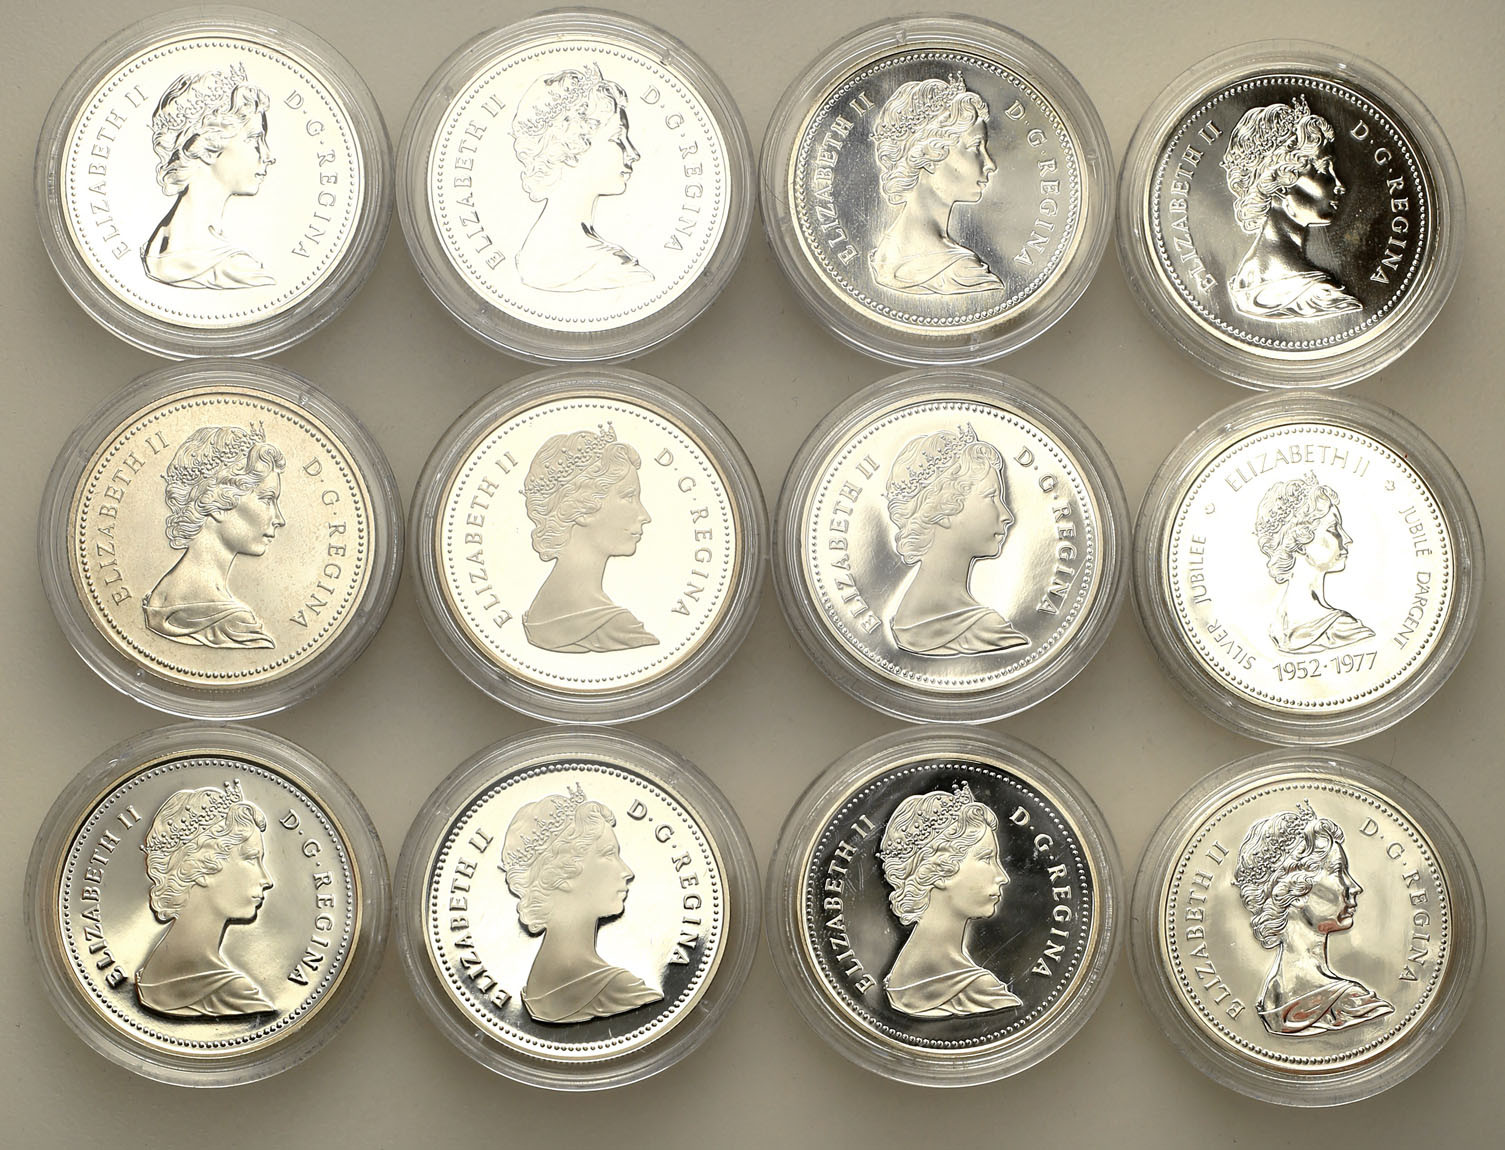 Kanada. Dolar 1972-1988, zestaw 12 sztuk